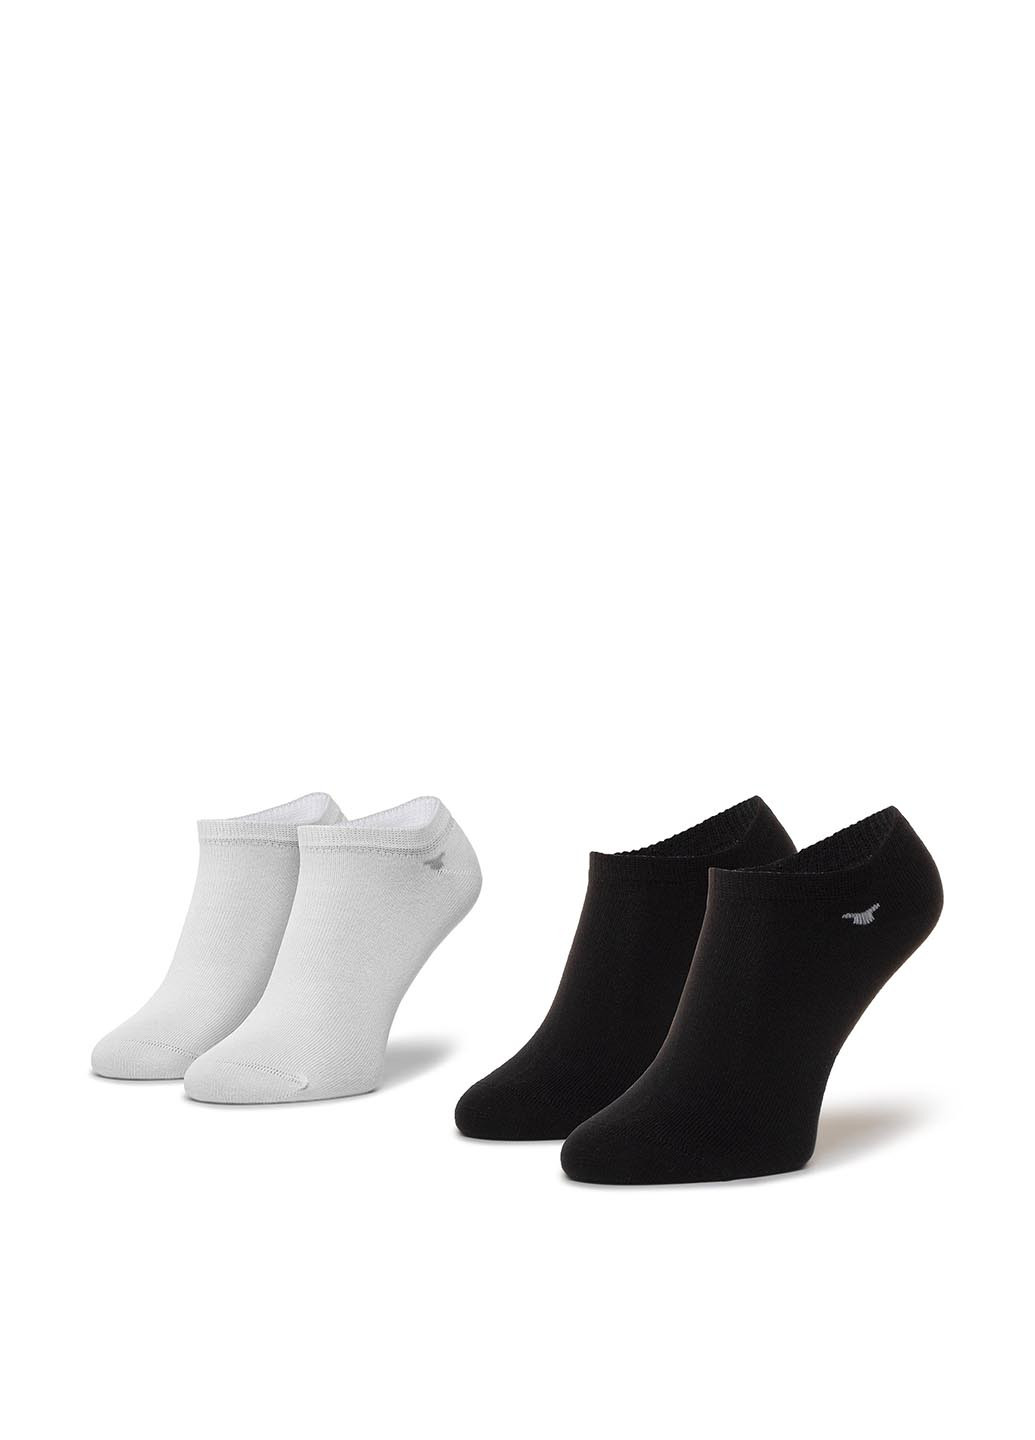 Шкарпетки чоловічі Tom Tailor 90190C 43-46 WHITE/BLACK Tom Tailor 90190c 43-46 white/black без ущільненого носка однотонні чорно-білі повсякденні